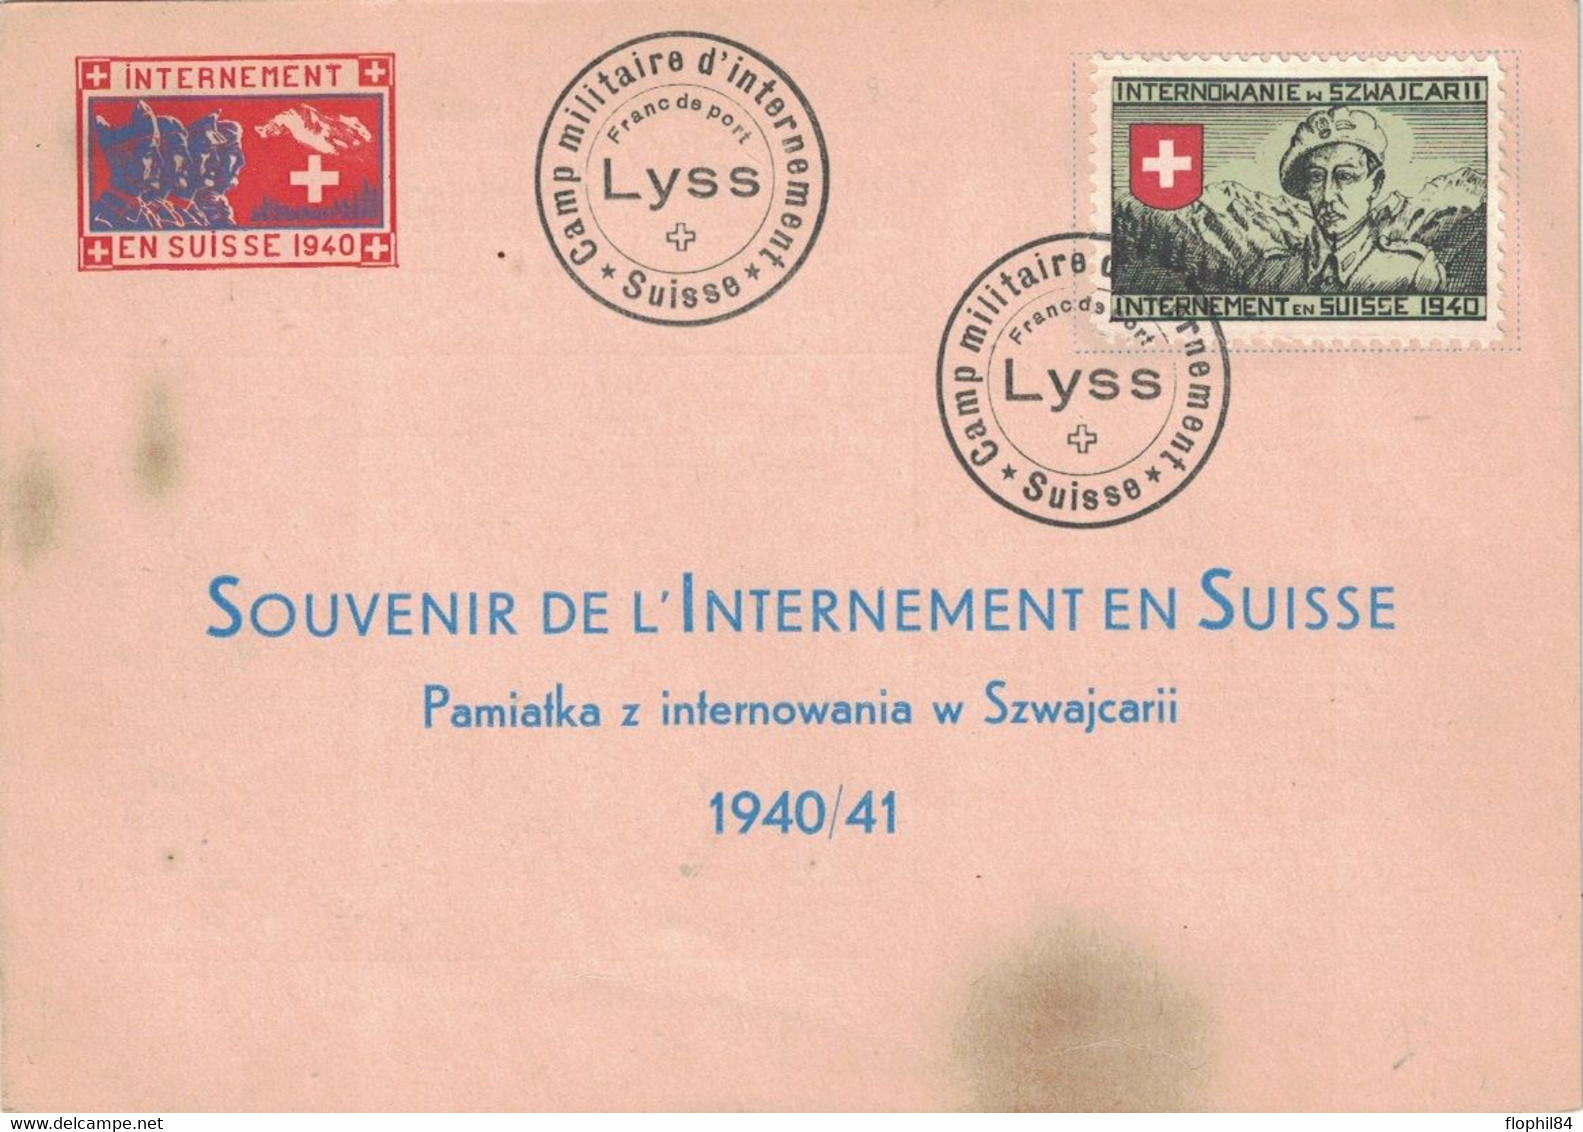 INTERNEMENT MILITAIRE EN SUISSE EN 1940 - ENVELOPPE AVEC VIGNETTE - CAMP DE LYSS. - Cartas & Documentos